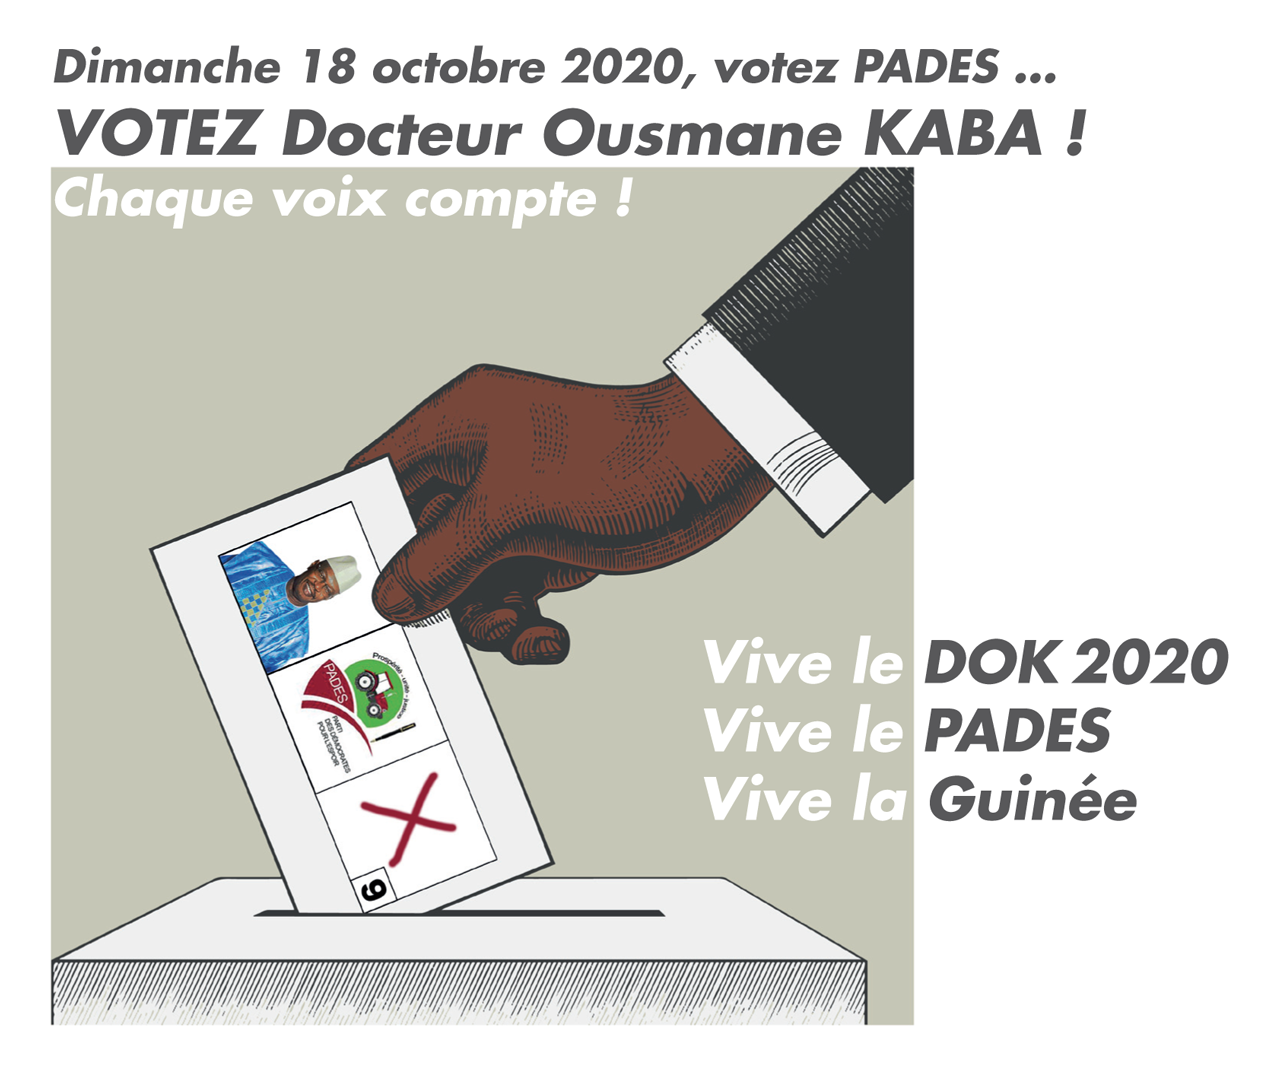 Dimanche 18 octobre 2020, votez PADES … VOTEZ Docteur Ousmane KABA ! Chaque voix compte ! Vive le DOK 2020 ! Vive le PADES ! Vive la Guinée !